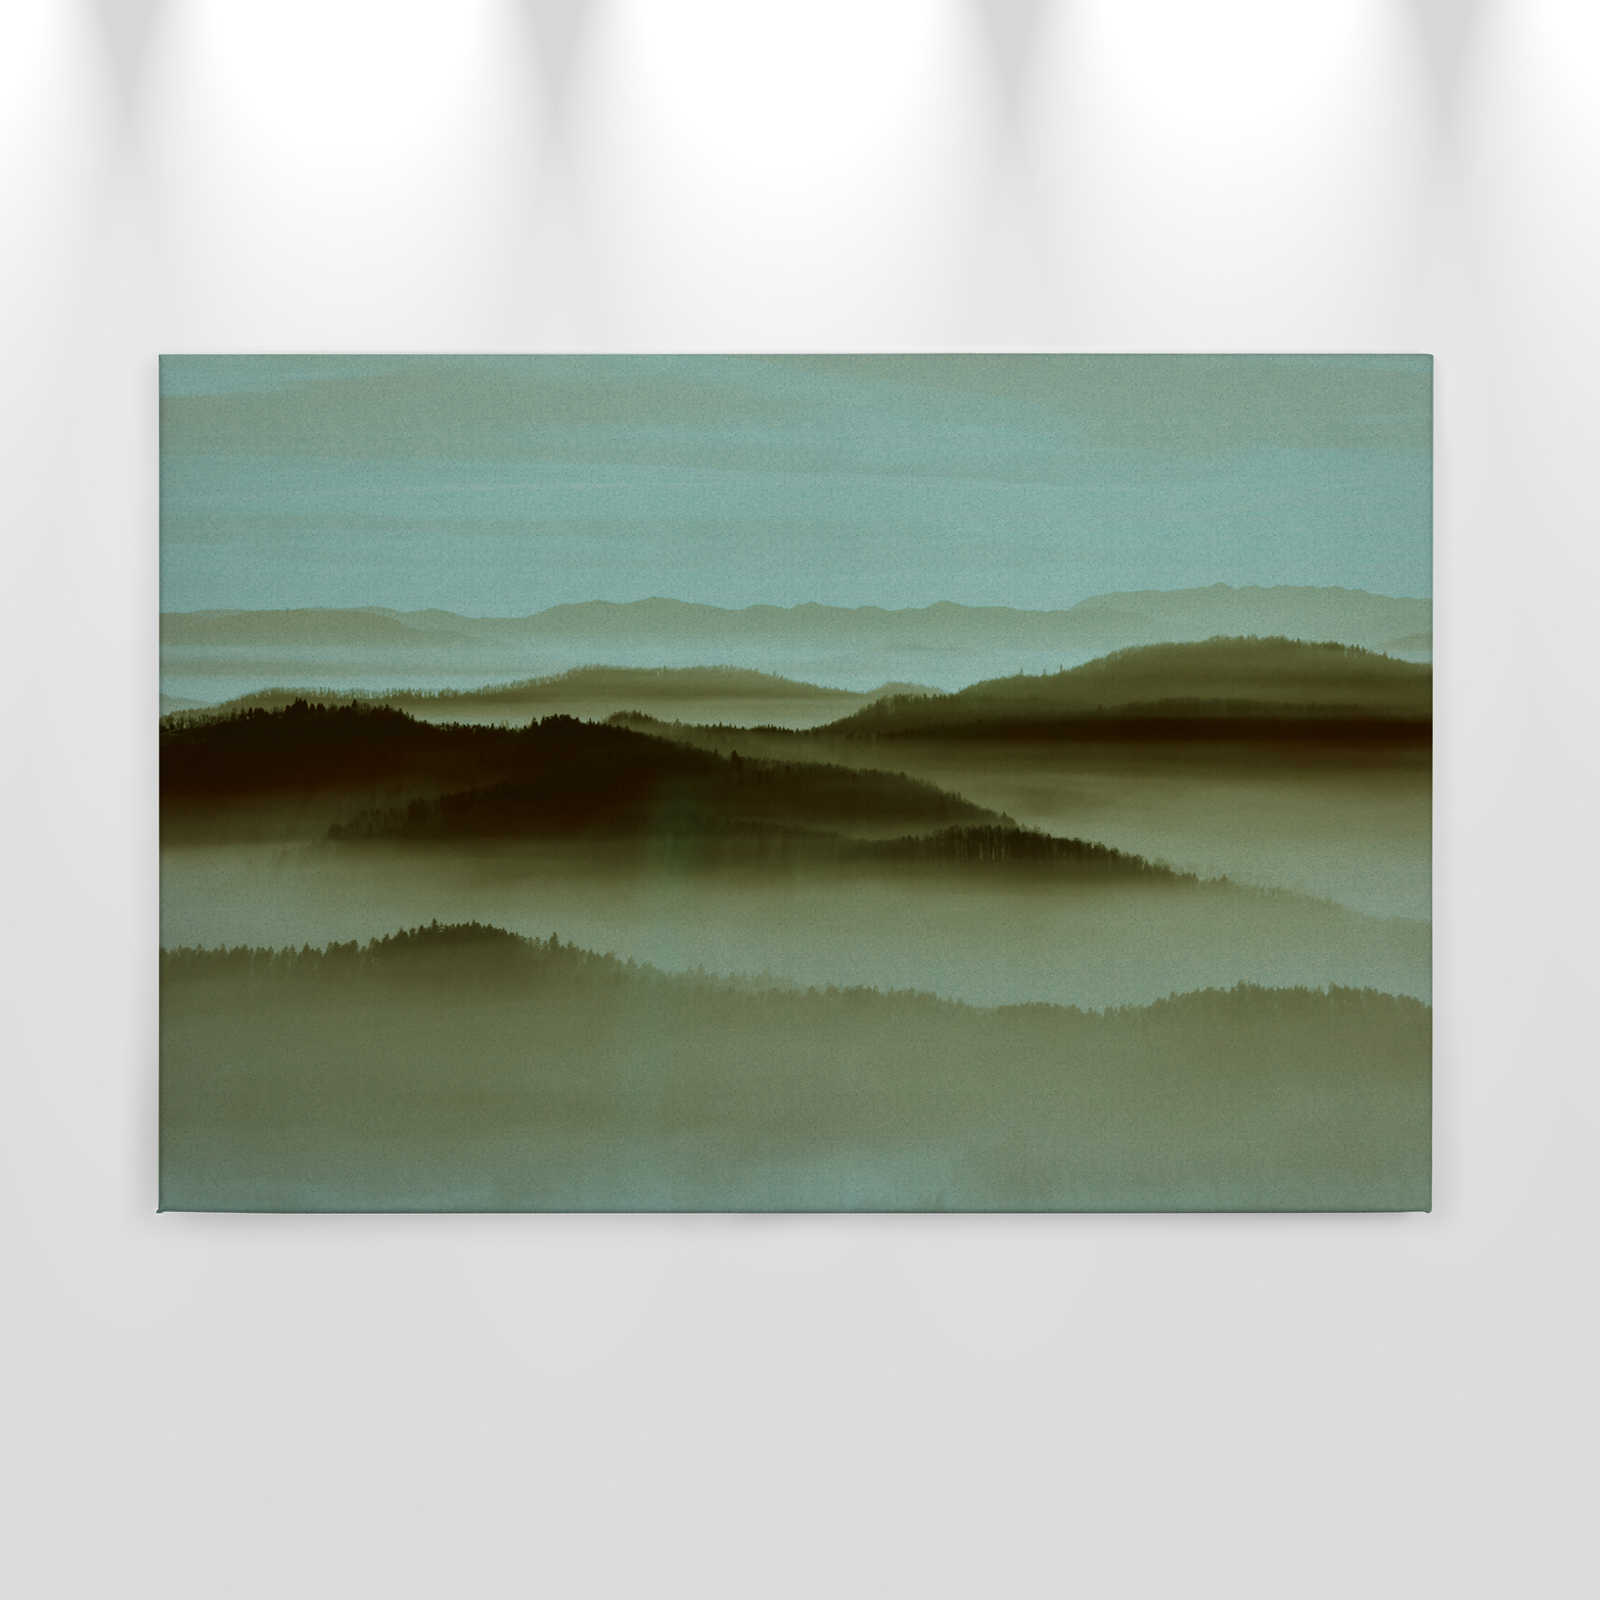             Horizonte 2 - Pintura en lienzo en estructura de cartón con paisaje de niebla, naturaleza Sky Line - 0,90 m x 0,60 m
        